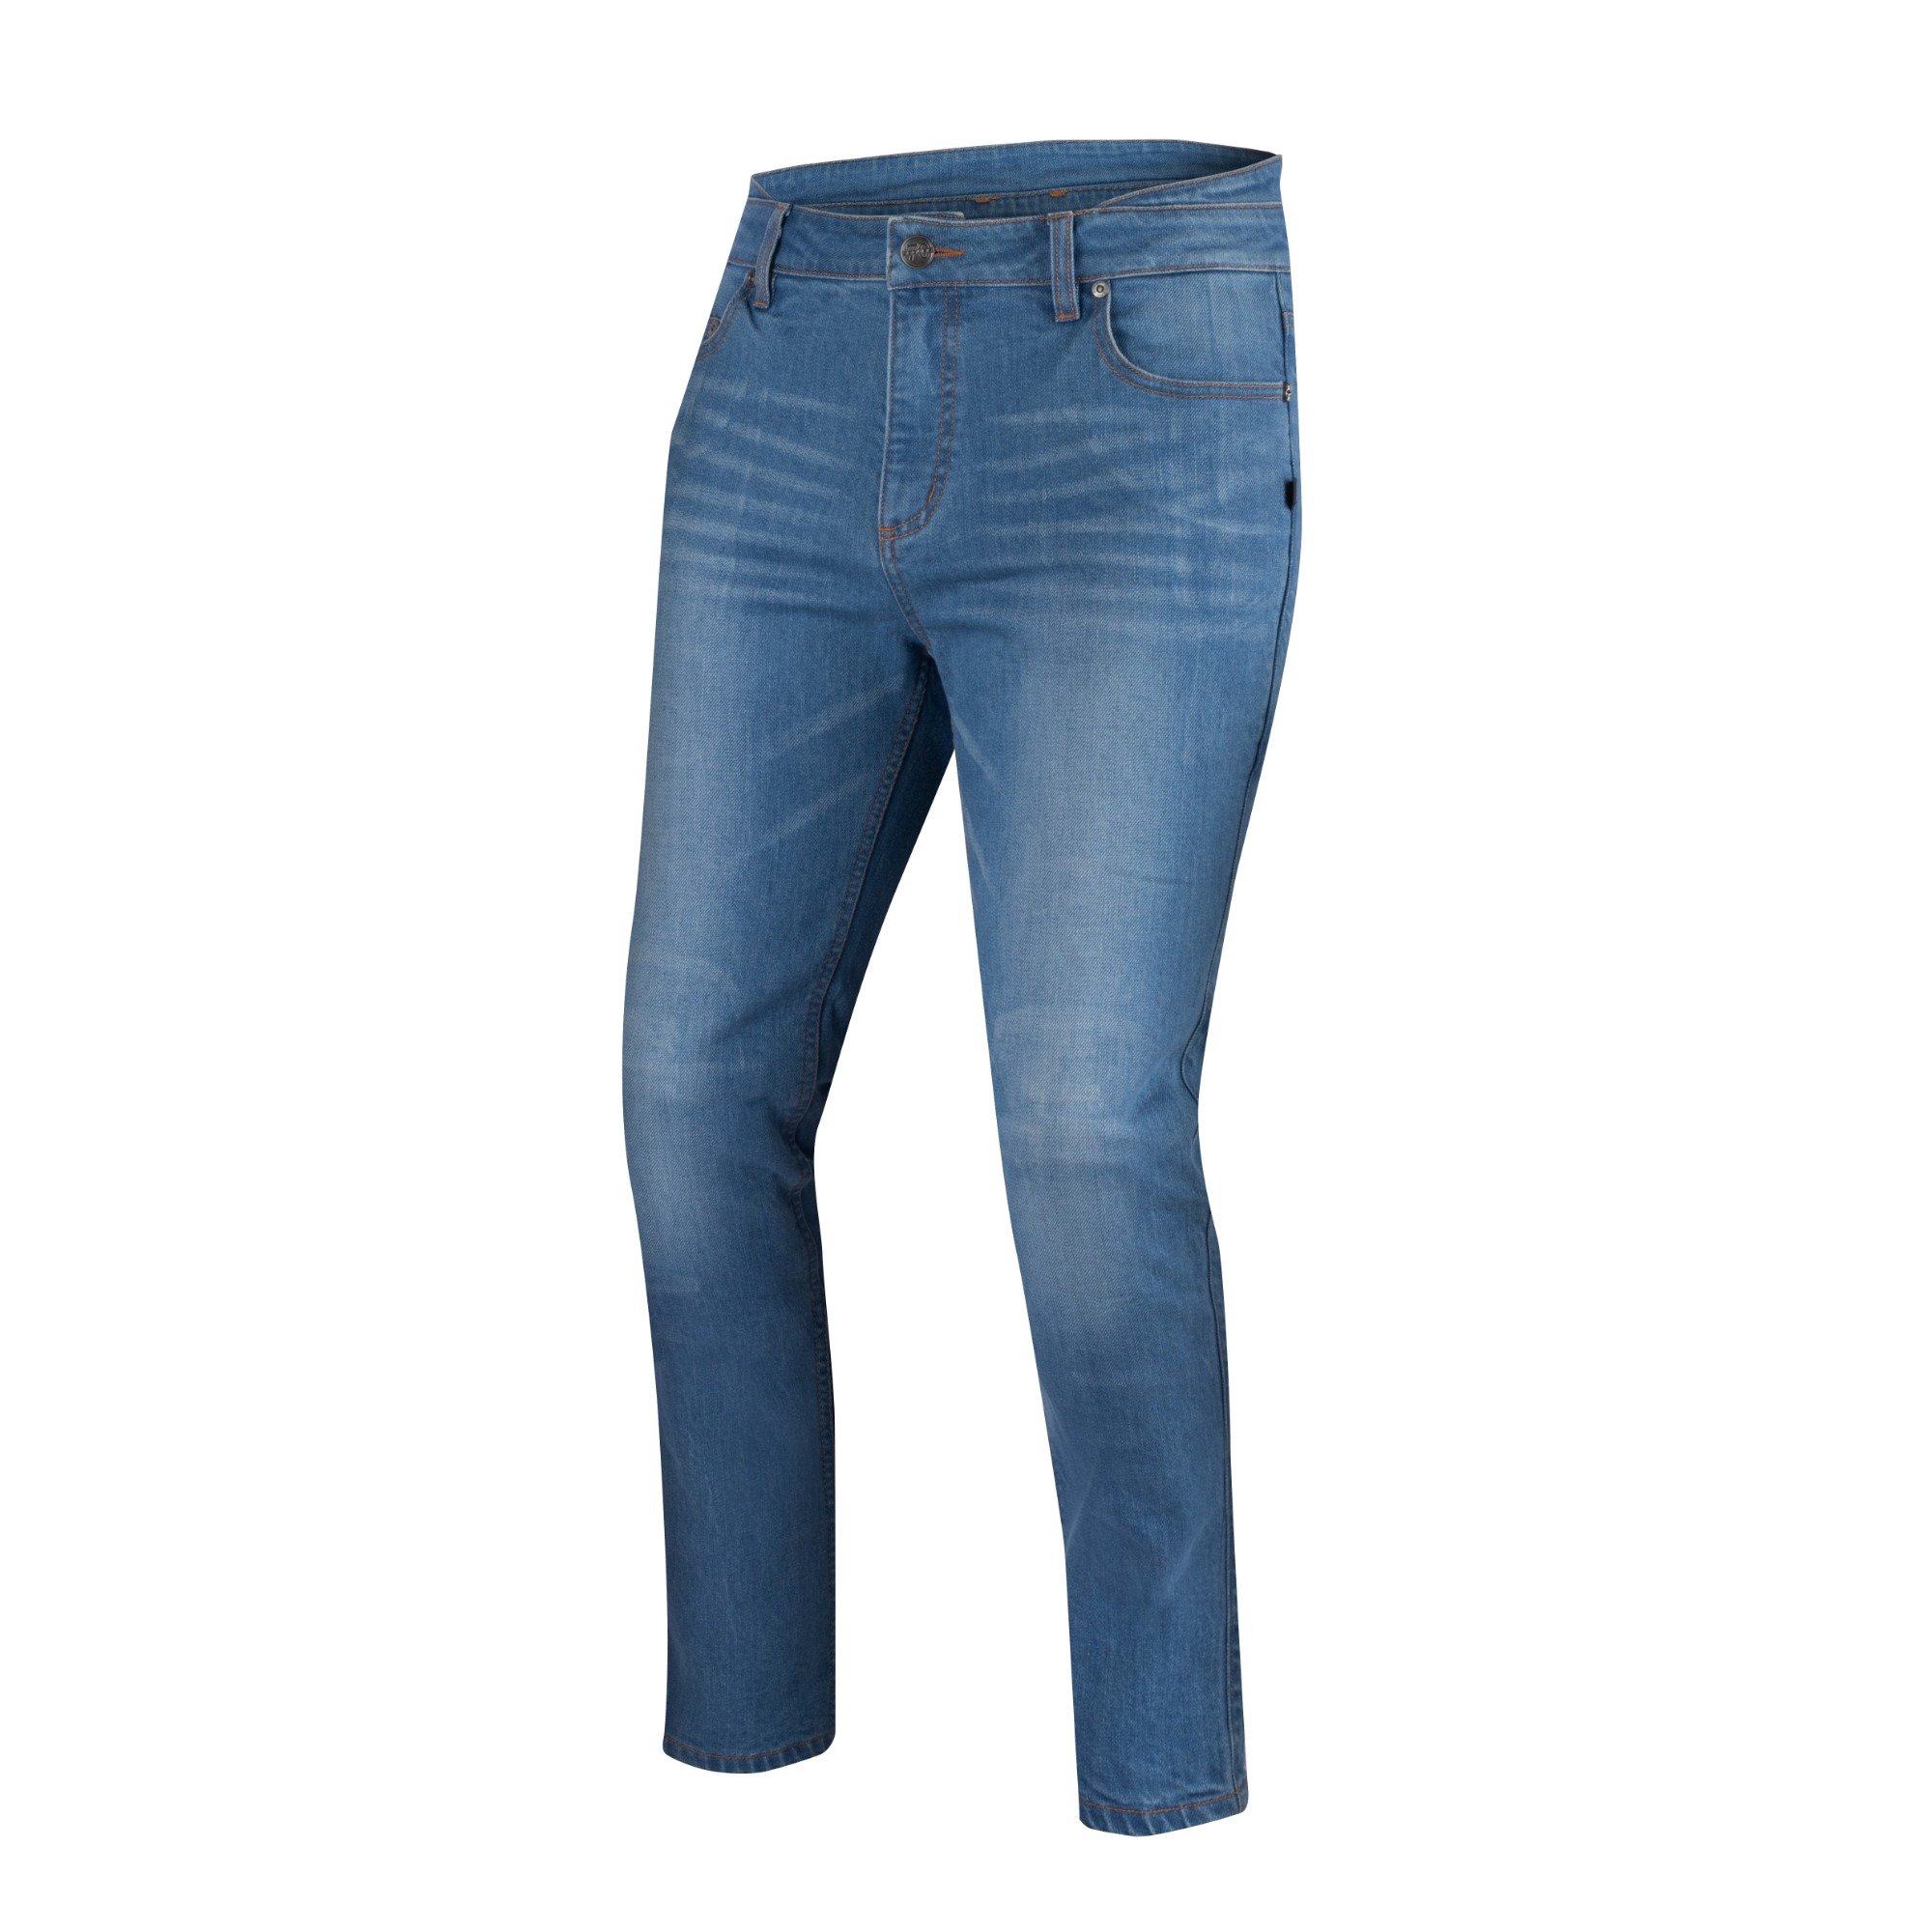 Image of Segura Trousers Rosco Blue Talla XL